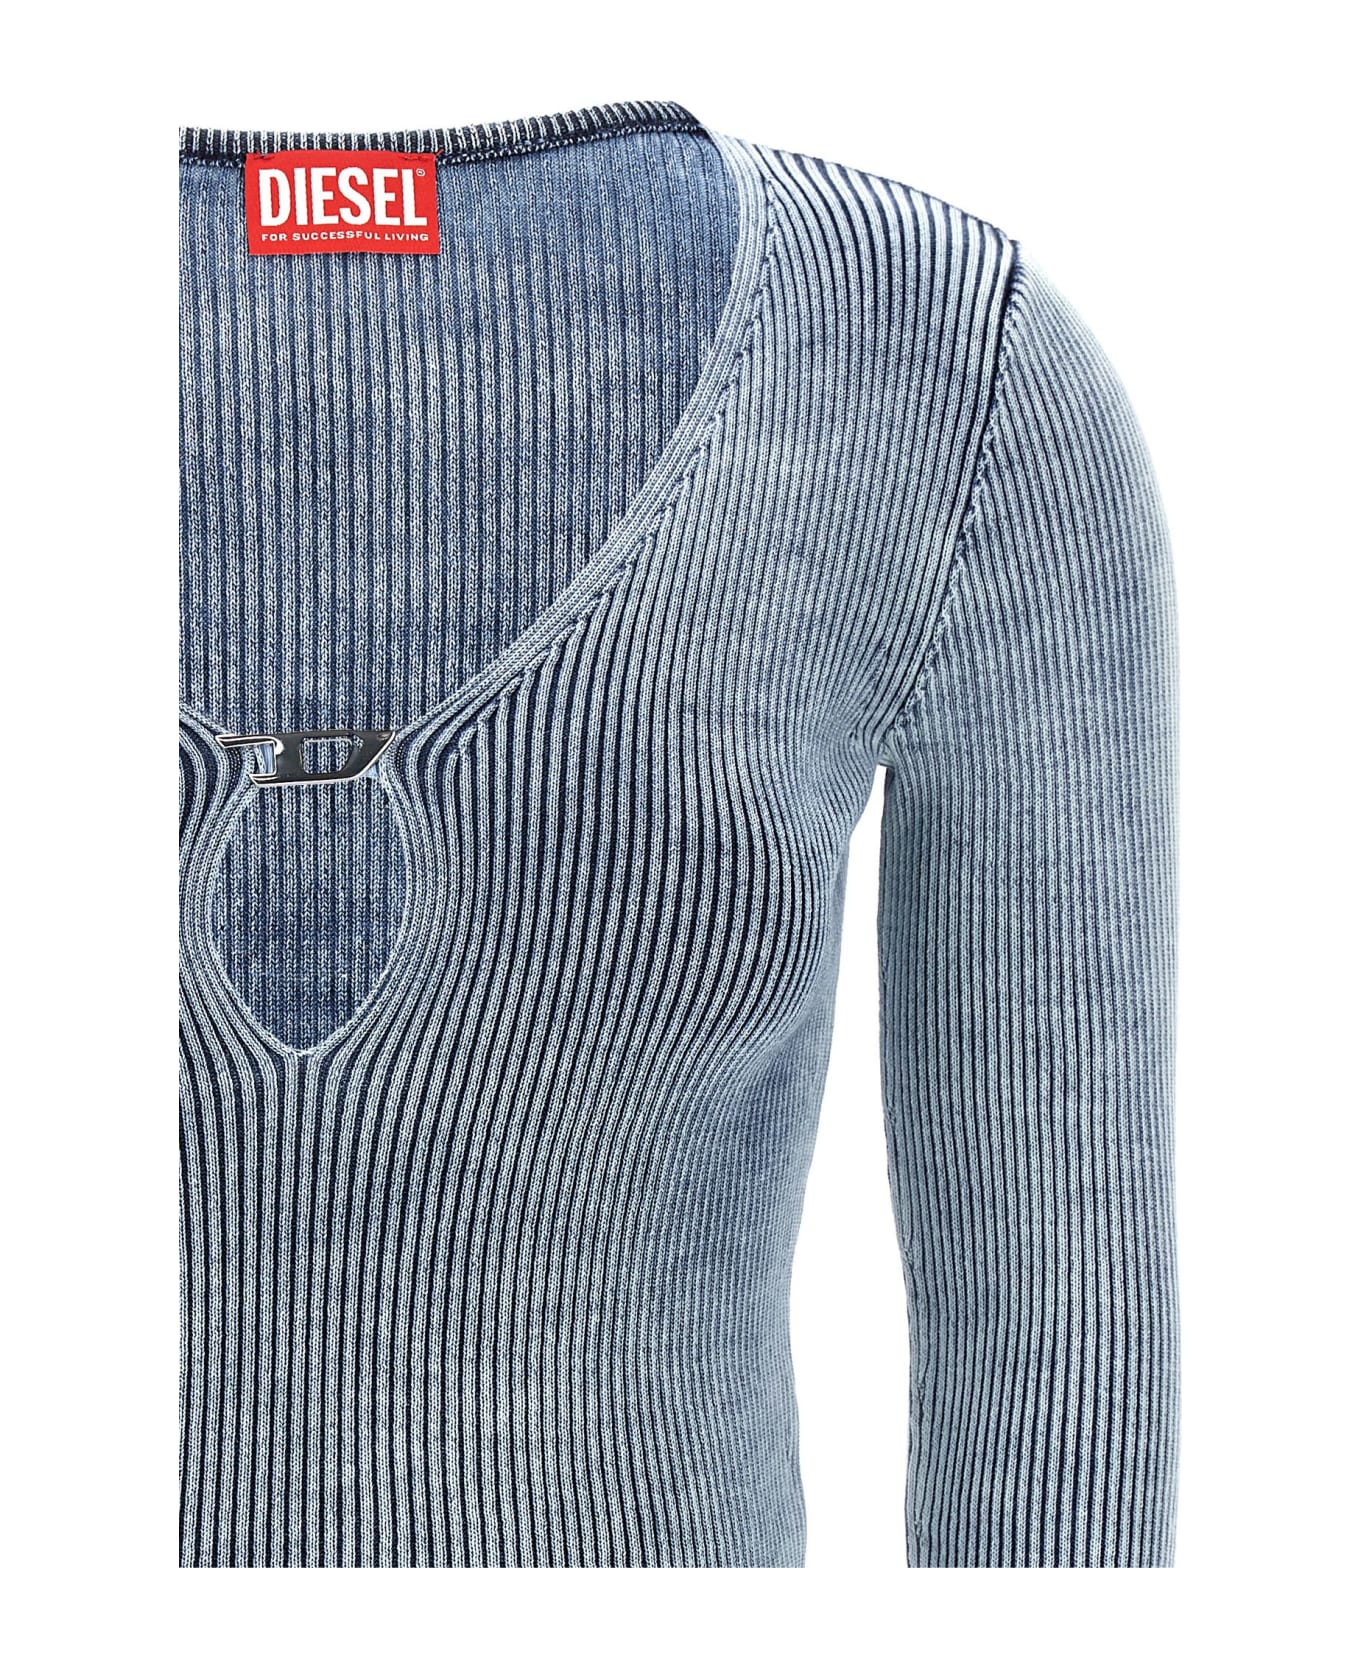 Diesel 'm-teri' Sweater ニットウェア